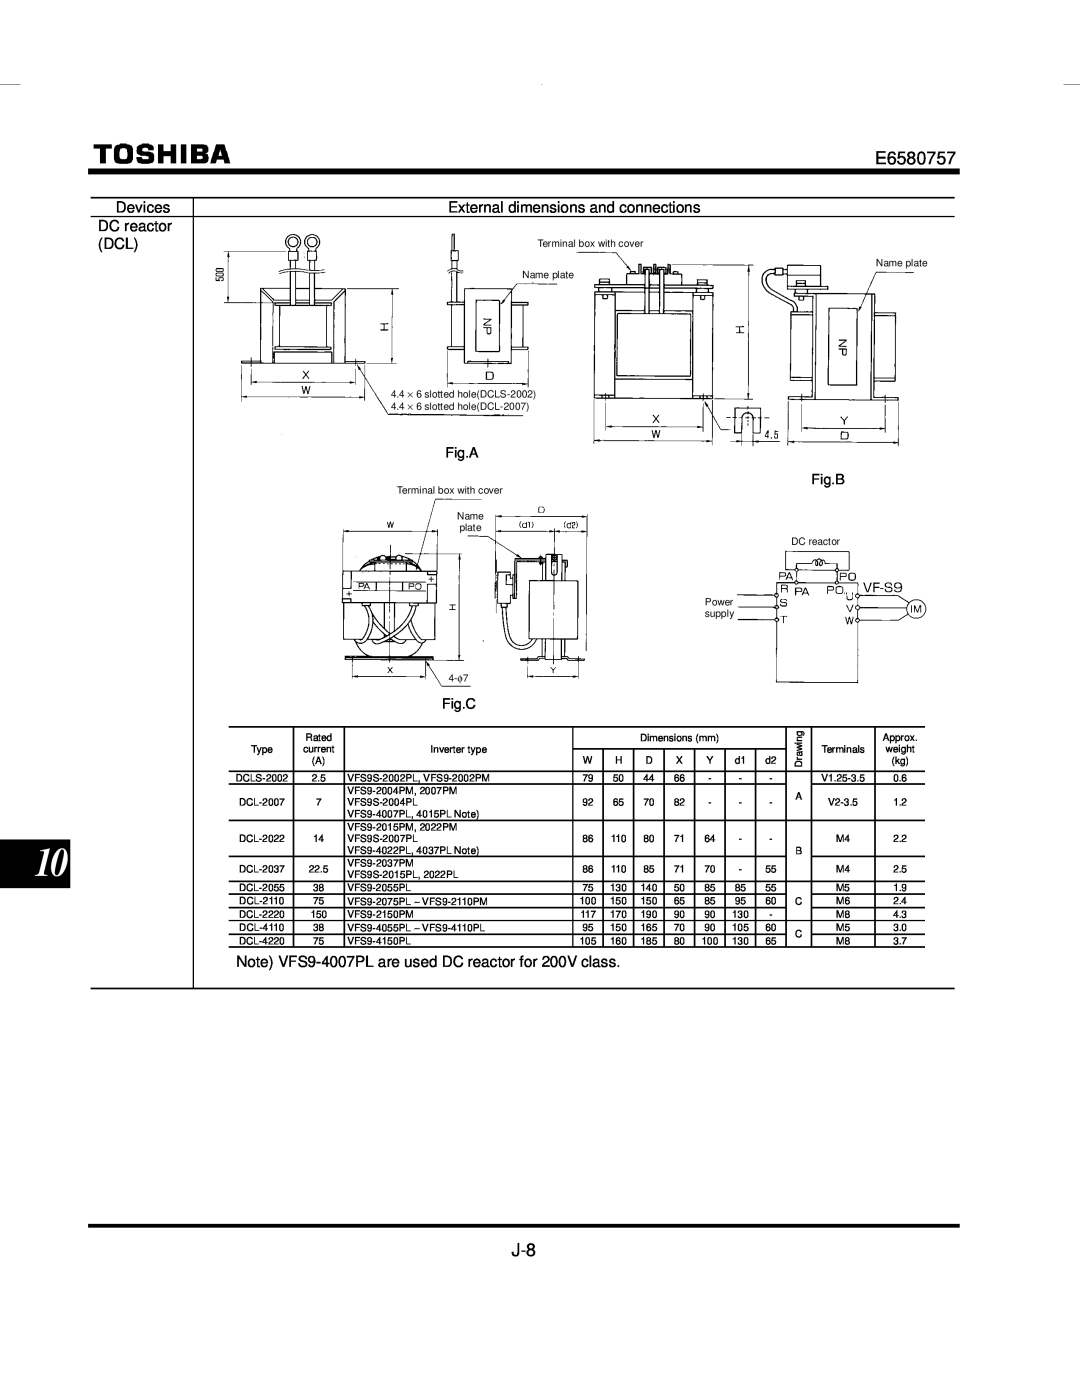 Toshiba VF-S9 manual Fig.A, Fig.C, Fig.B 